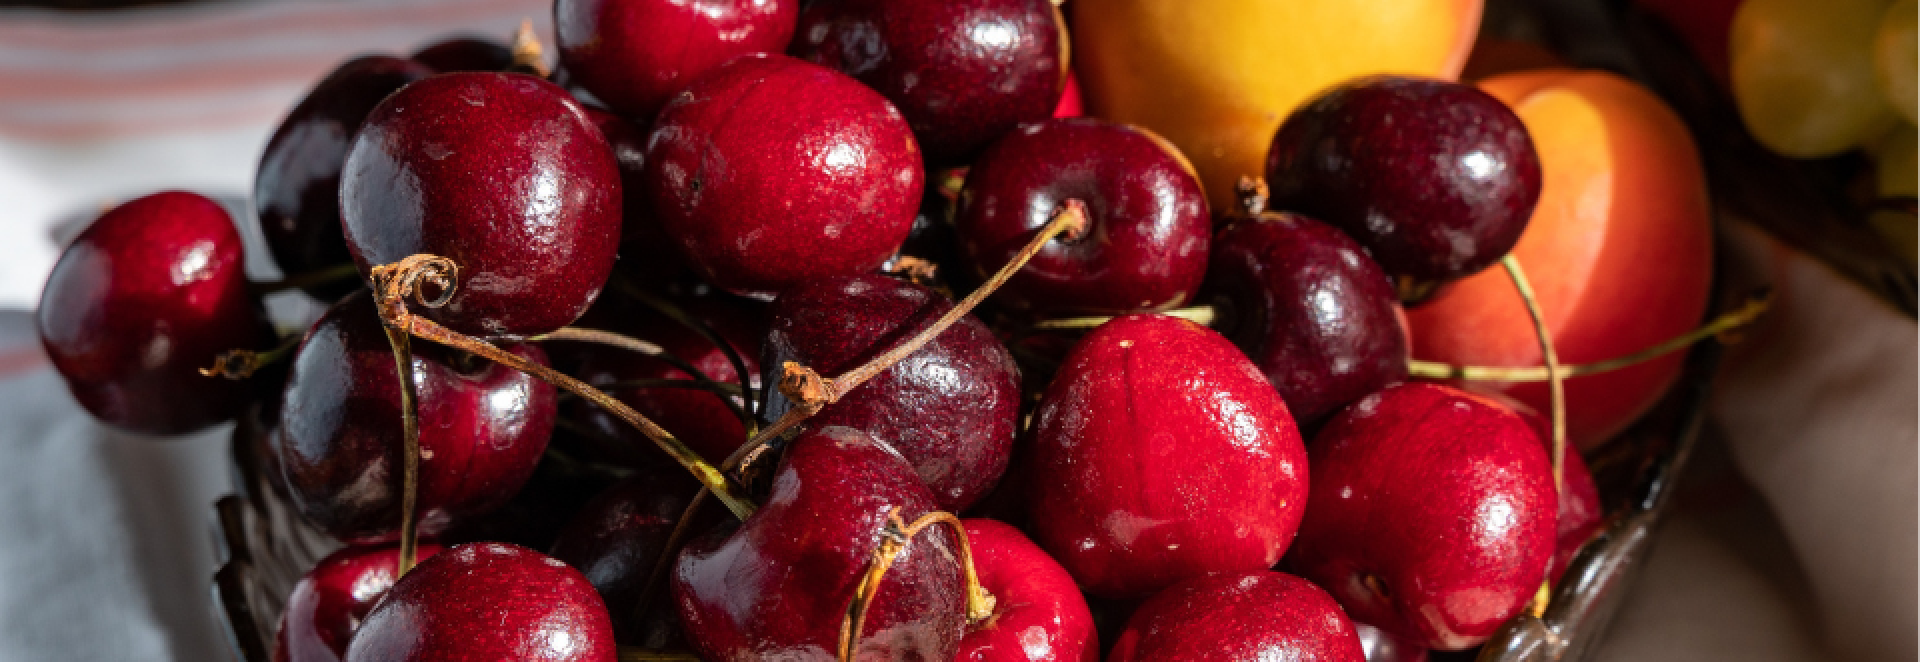 Letní teploty nabírají na síle. Dopřejte si kvalitní sezónní ovoce!